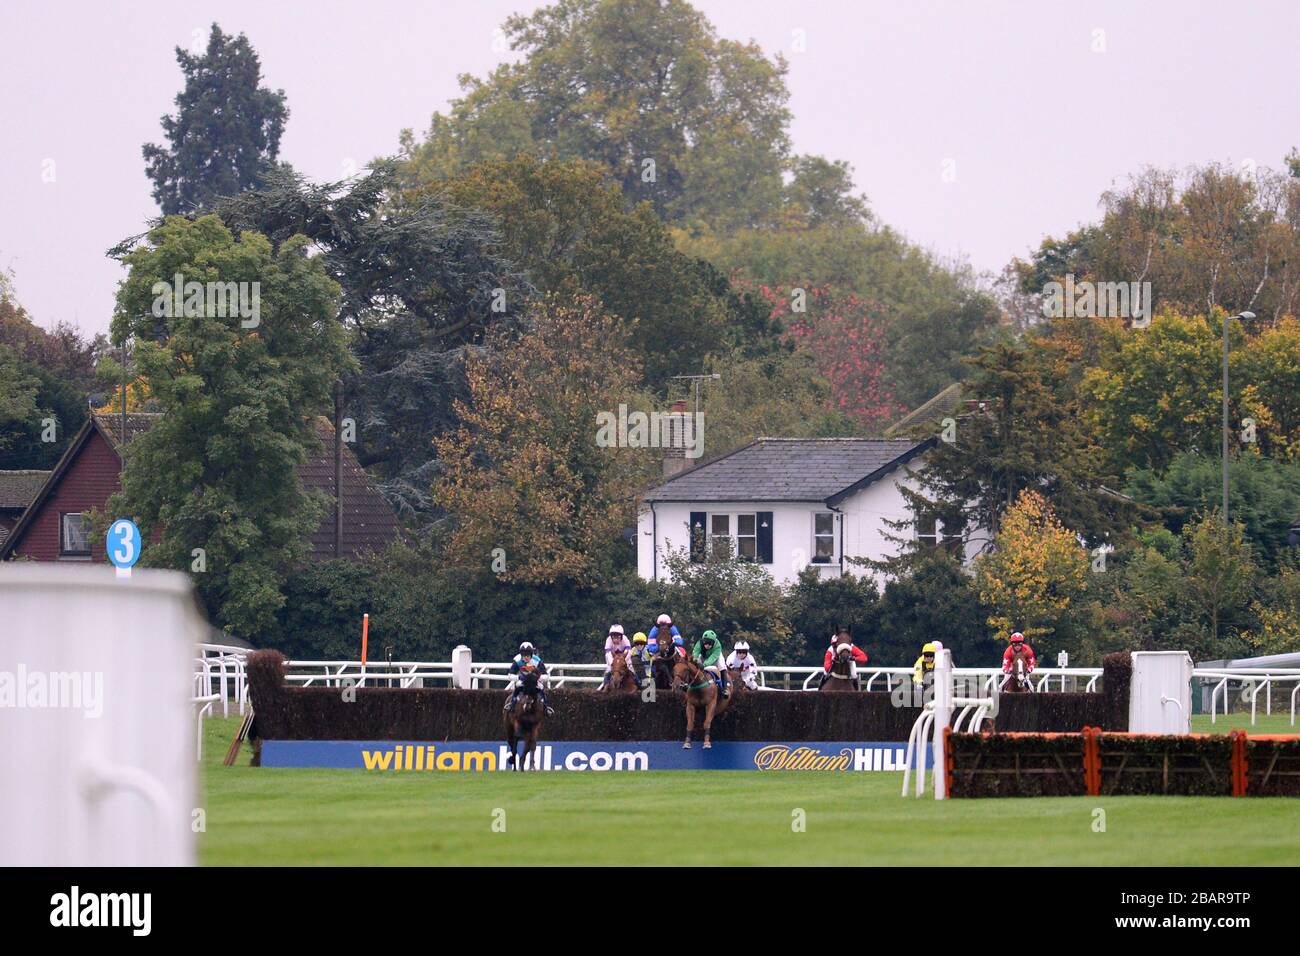 Les chevaux sautent la clôture sponsorisée par William Hill pendant la williamhill.com chasse des débutants Banque D'Images